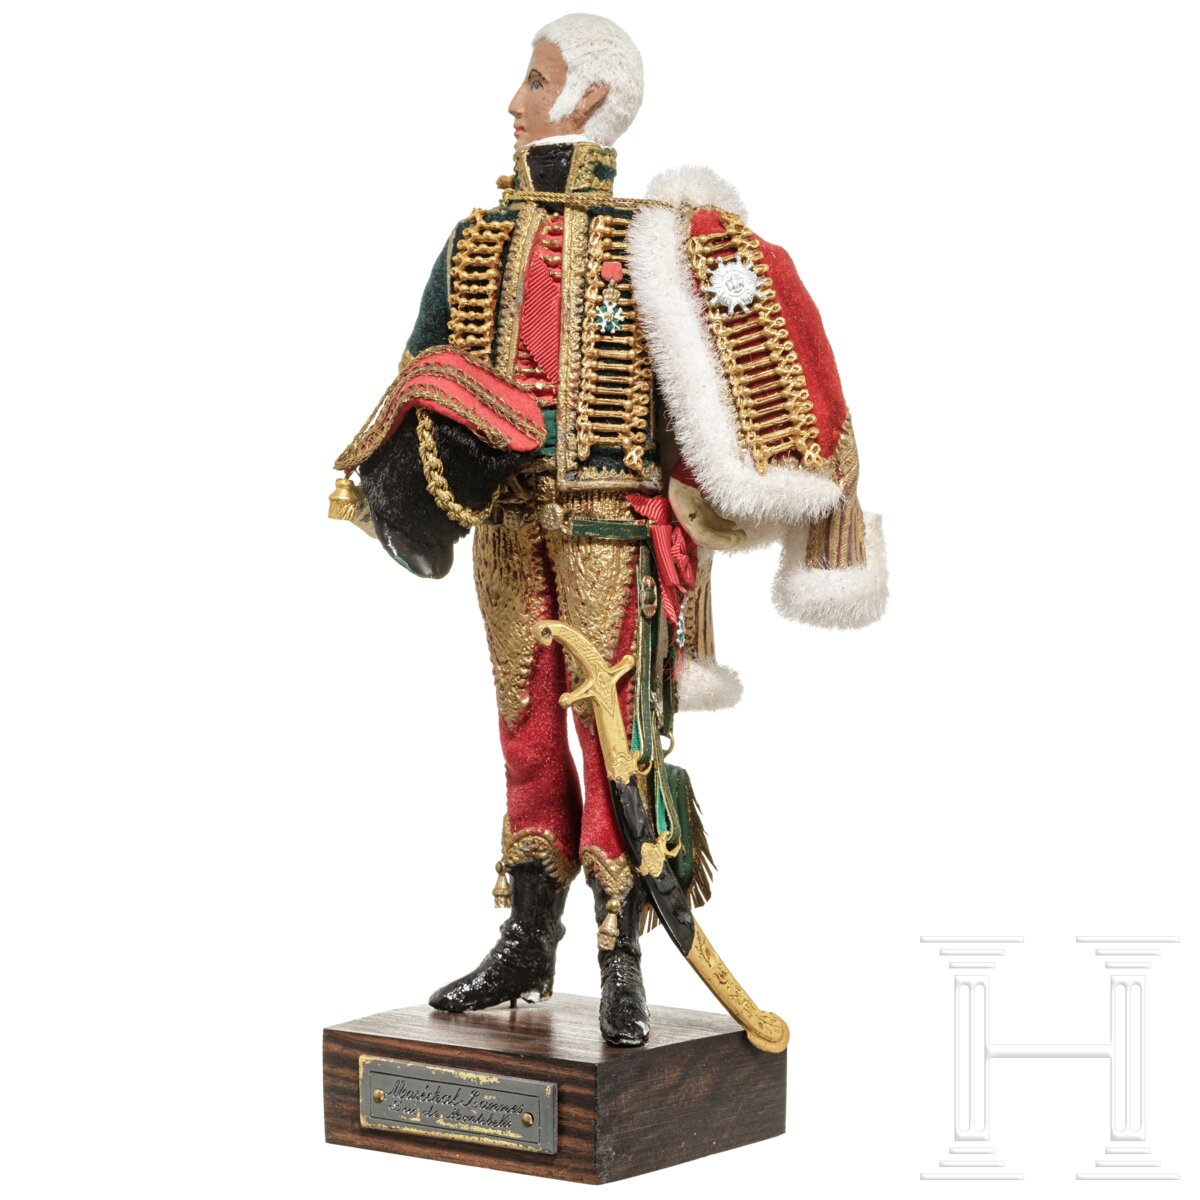 Marschall Lannes um 1805 - Uniformfigur von Marcel Riffet, 20. Jhdt. - Image 3 of 6